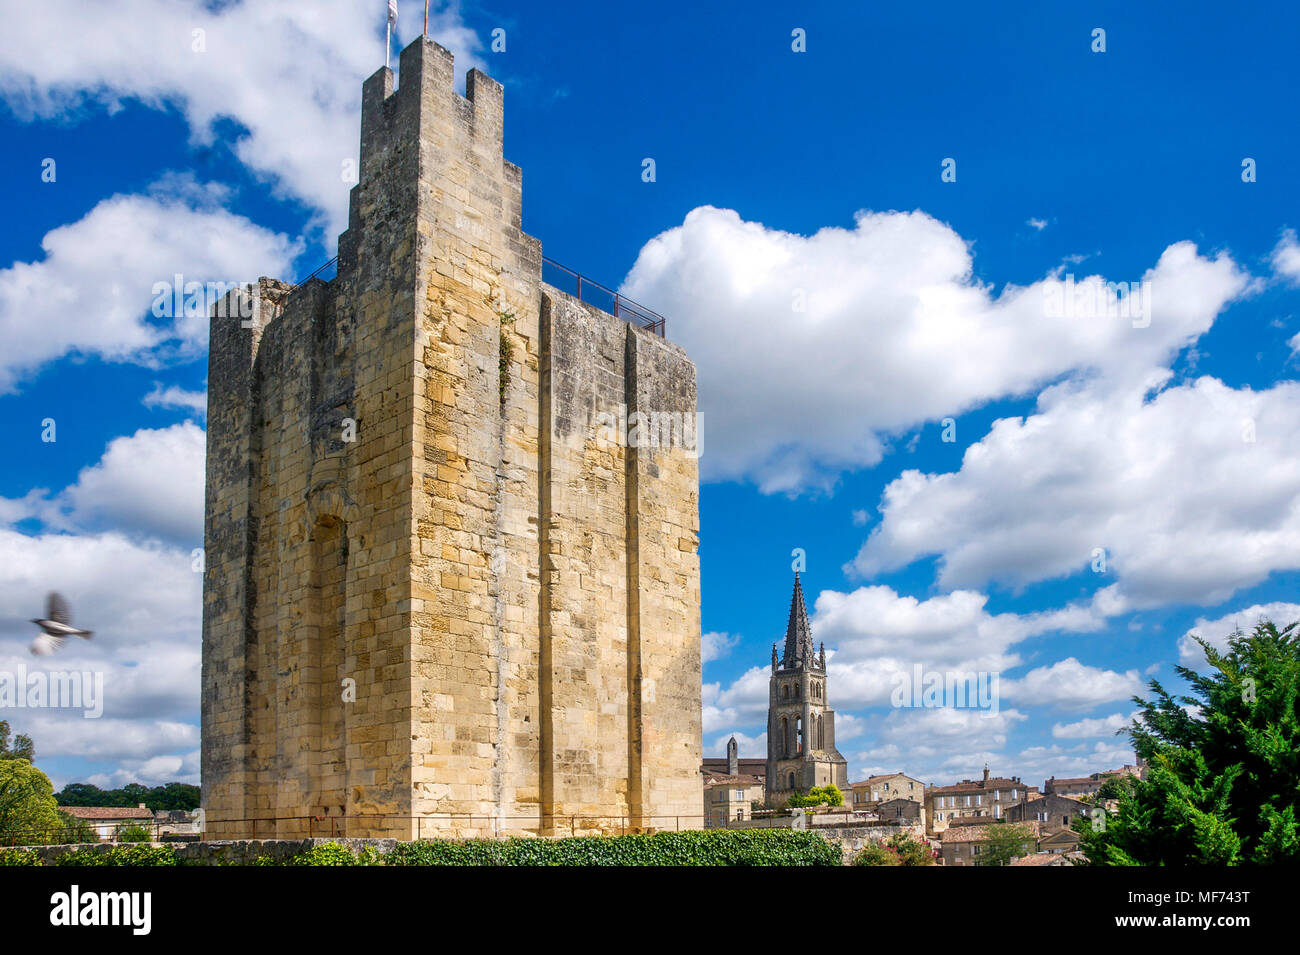 Chateau du Roi, King's Castle, tower, donjon, Saint-Émilion, Gironde Bordeaux, France, Stock Photo